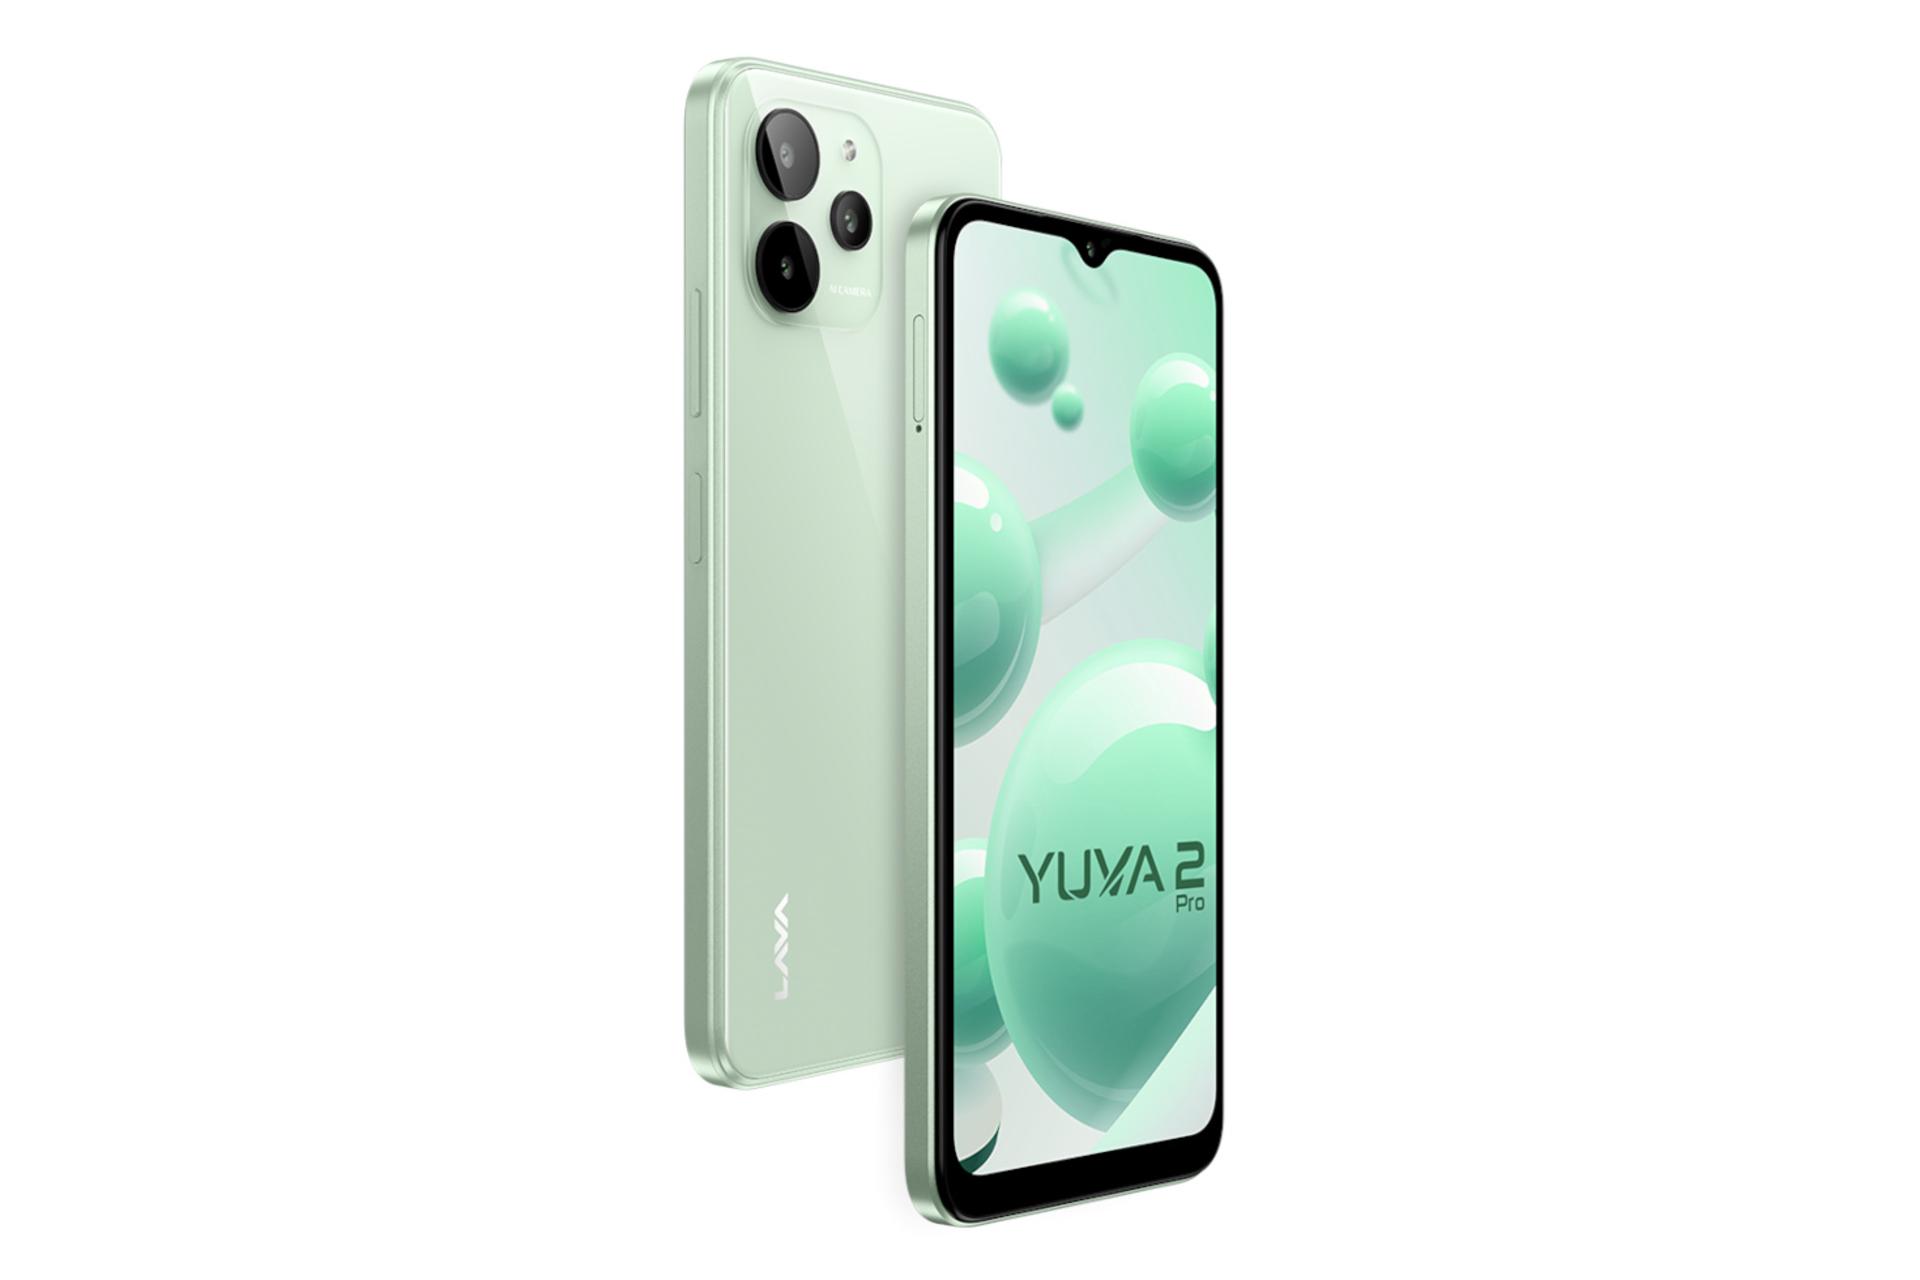 نمای جانبی گوشی موبایل Yuva 2 پرو لاوا / Lava Yuva 2 Pro سبز روشن